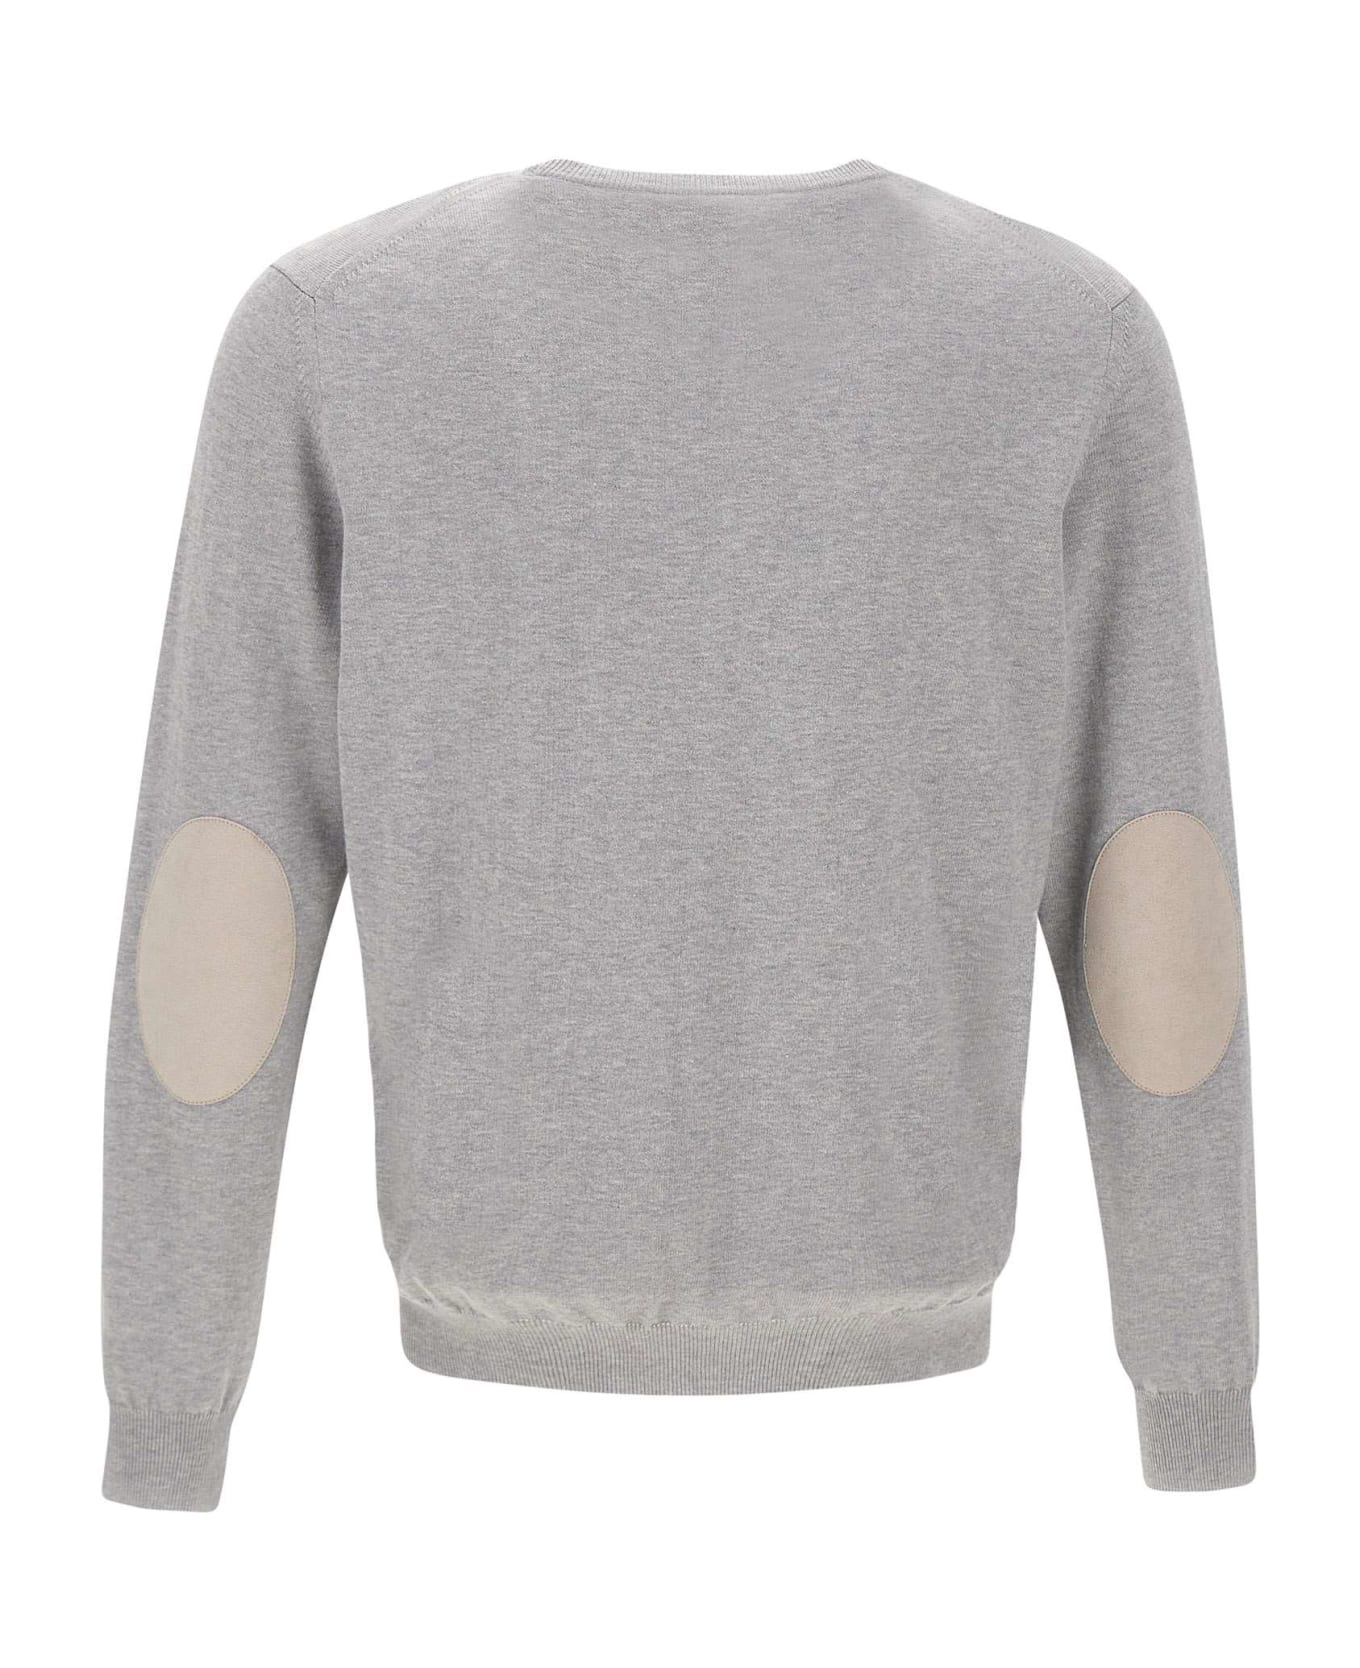 Kangra Cotton Sweater - GREY